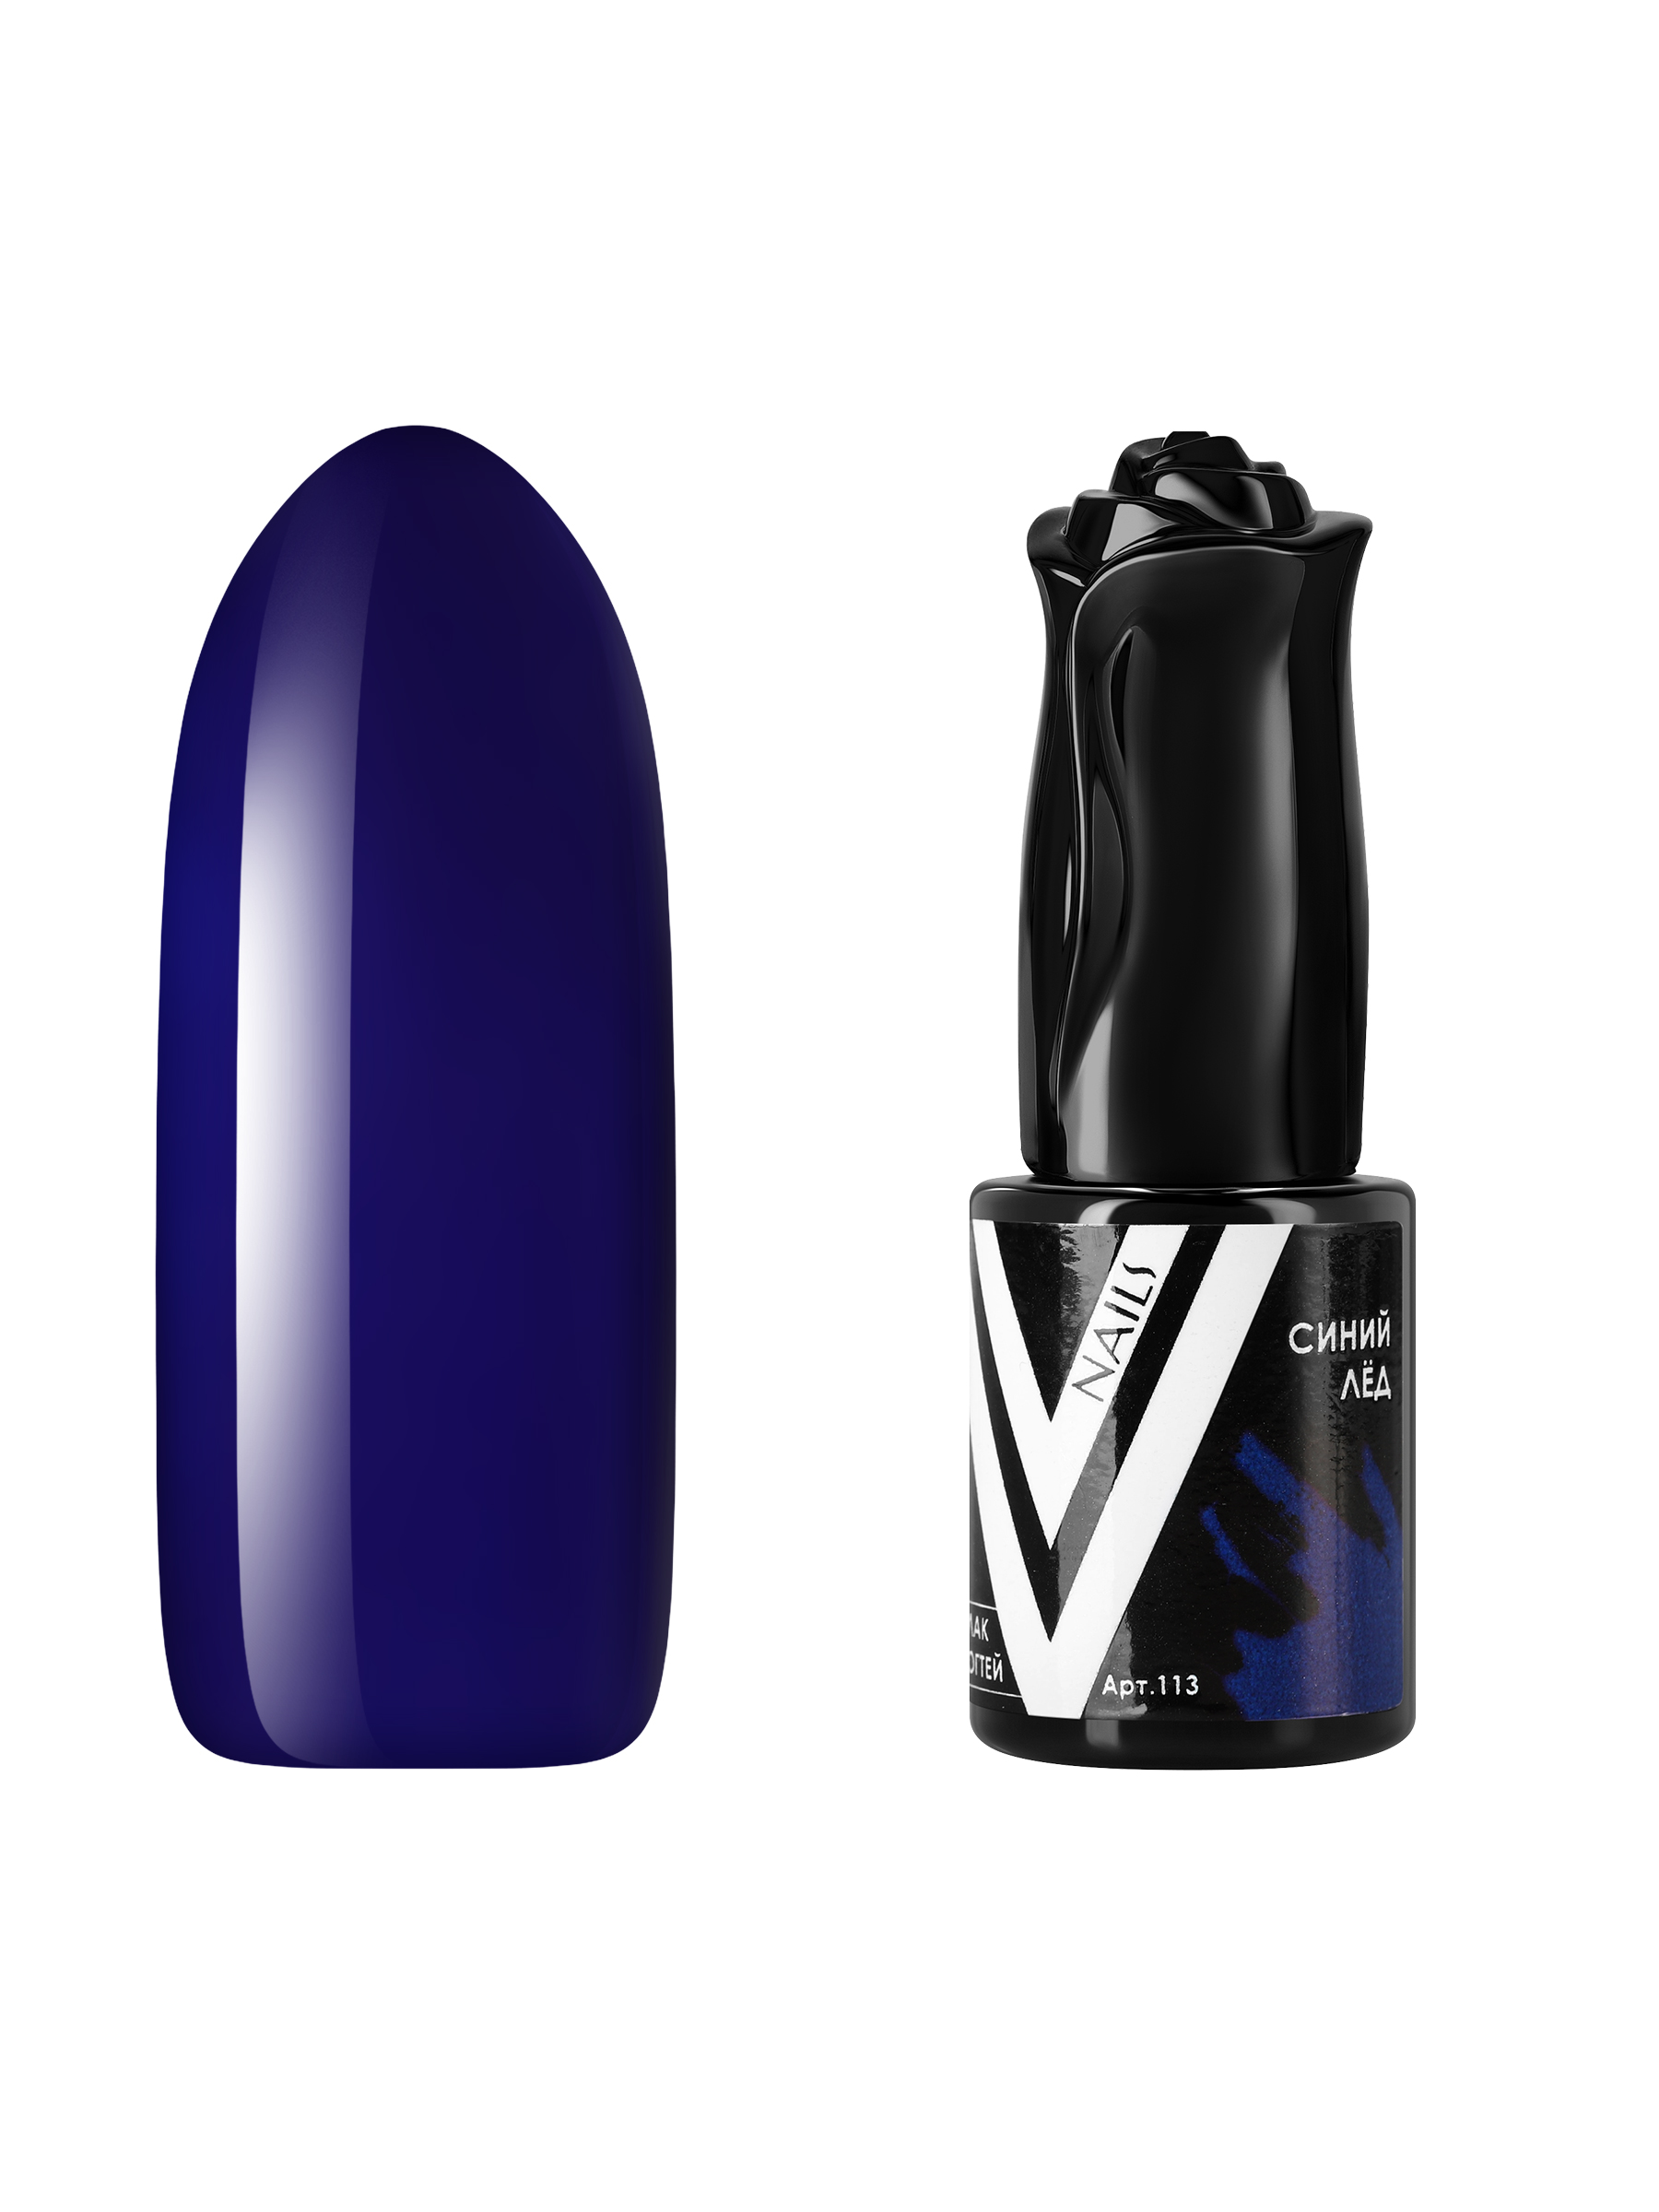 Гель-лак для ногтей Vogue Nails плотный самовыравнивающийся, темный, синий, 10 мл церковная свеча из воска 120 темный натуральный 1кг